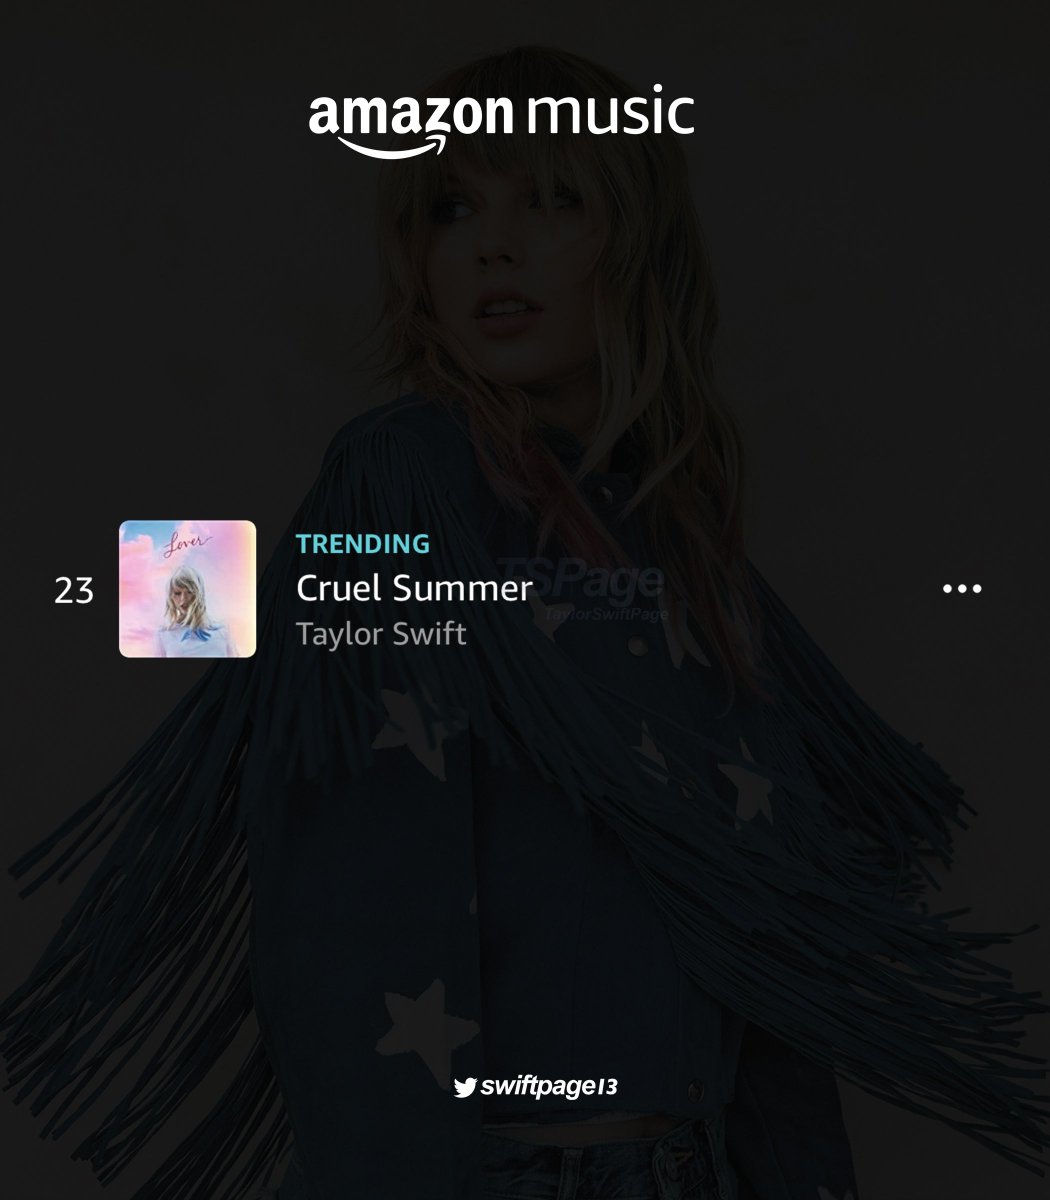 🇦🇺Australia Amazon Music Chart
19. Cruel Summer (+7)

🇬🇧UK Amazon Music Chart
23. Cruel Summer (+4)